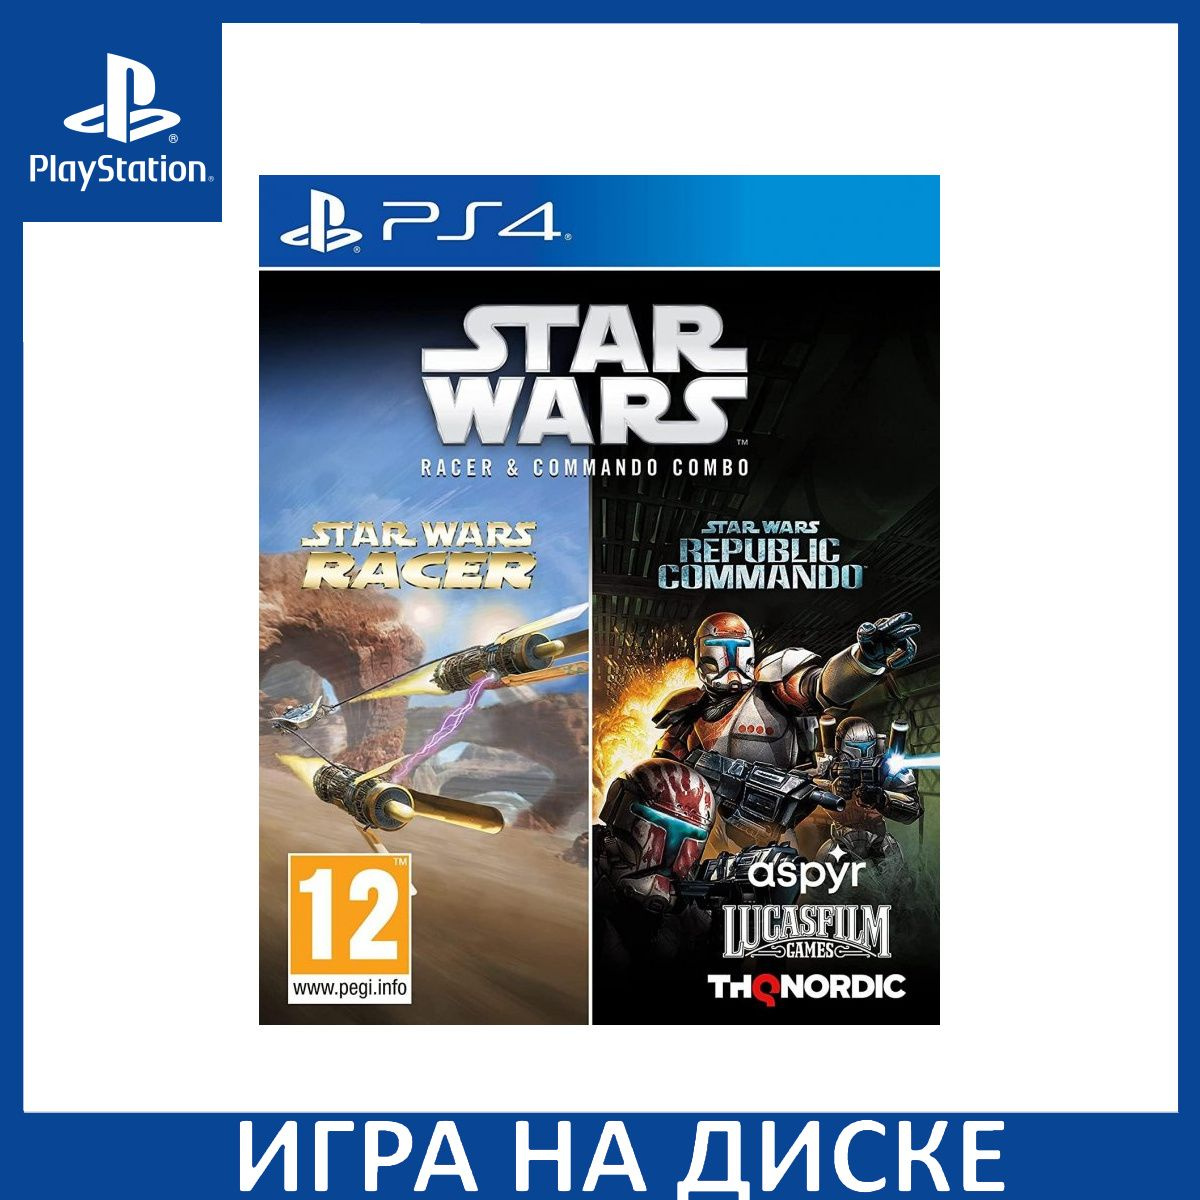 Диск с Игрой Star Wars Racer and Commando Combo (PS4). Новый лицензионный запечатанный диск.